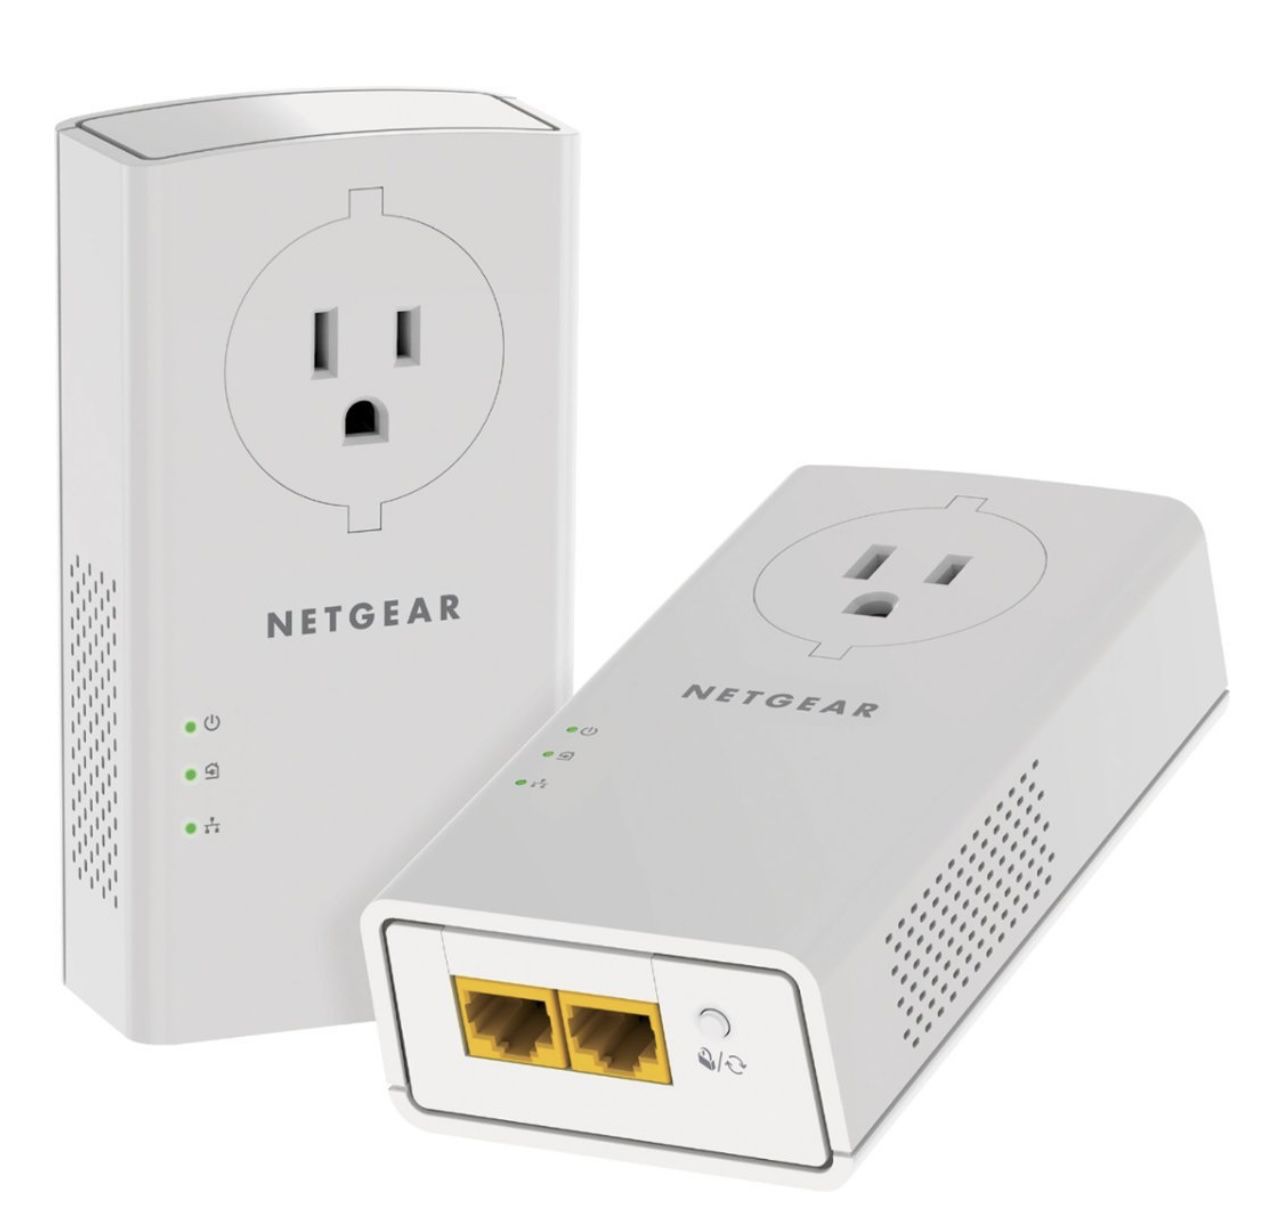 NETGEAR Powerline PLW1000 WiFi Extender